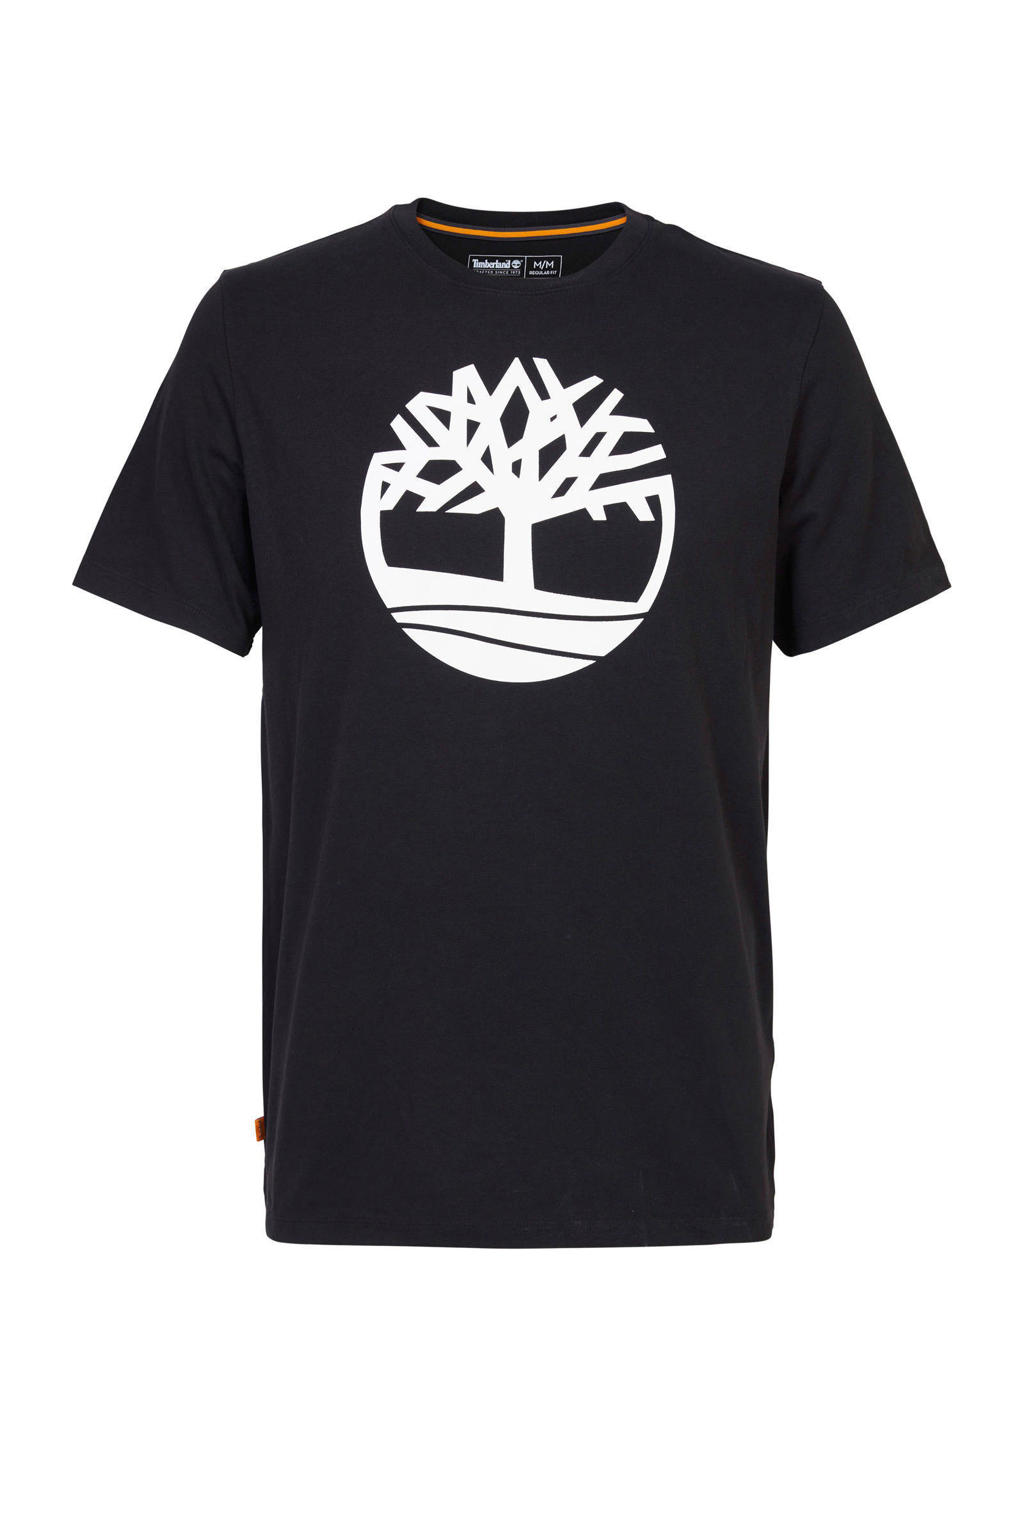 Zwarte heren Timberland T-shirt van biologisch katoen met logo dessin, korte mouwen en ronde hals